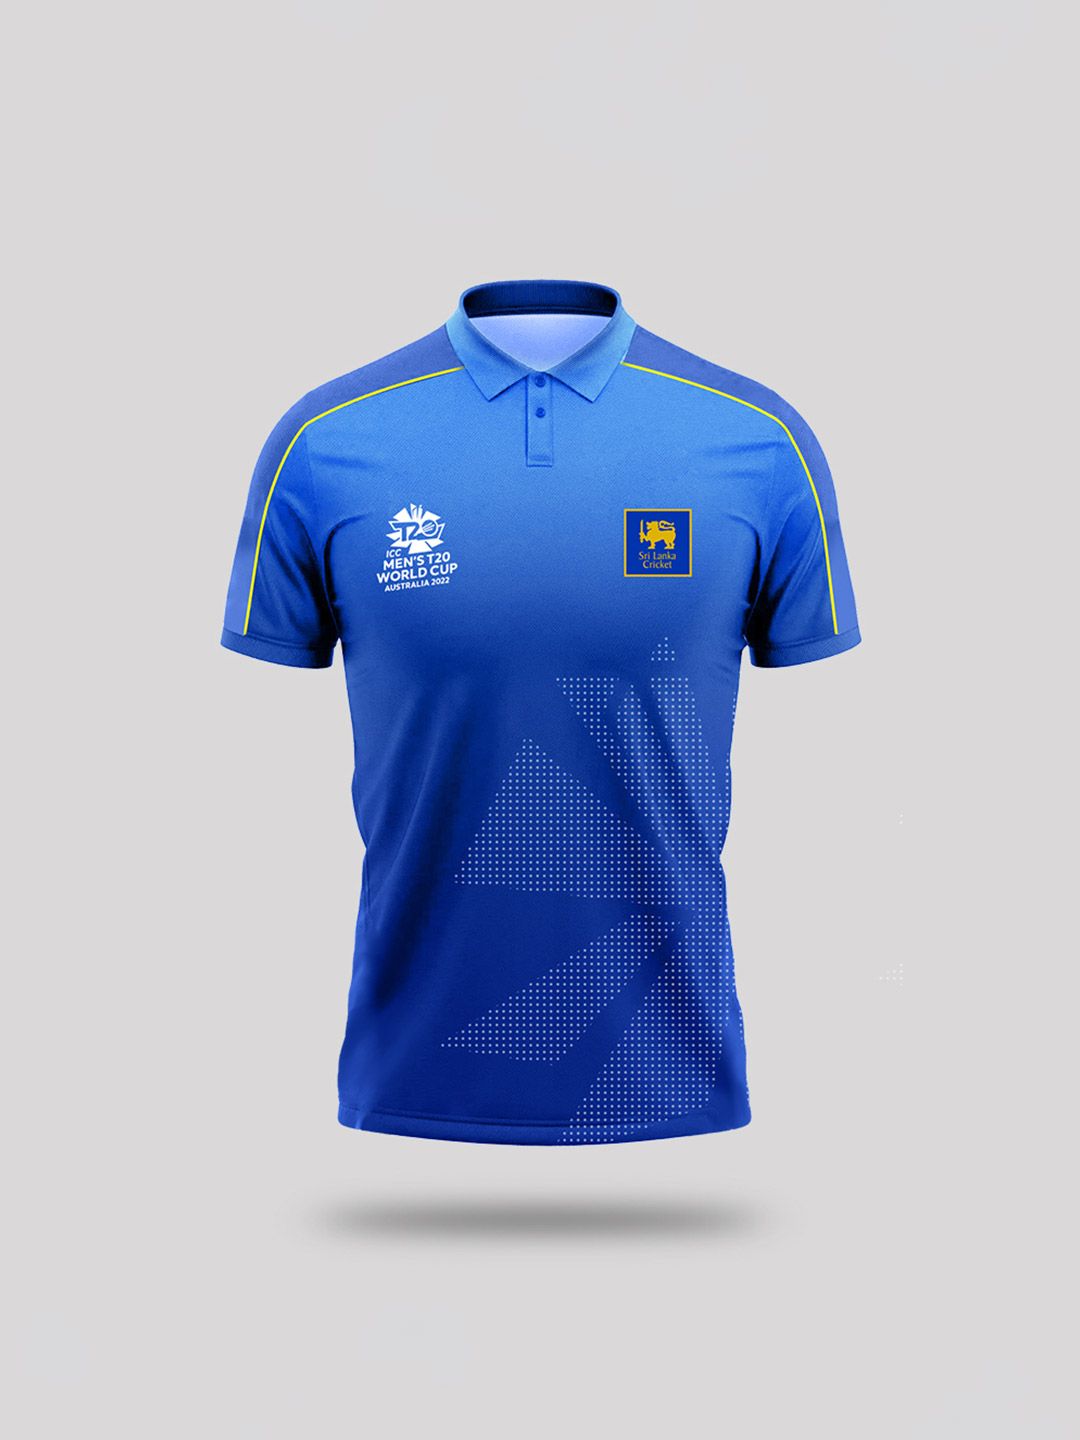 Buy Men Blue Polo T-Shirt From Fancode Shop.